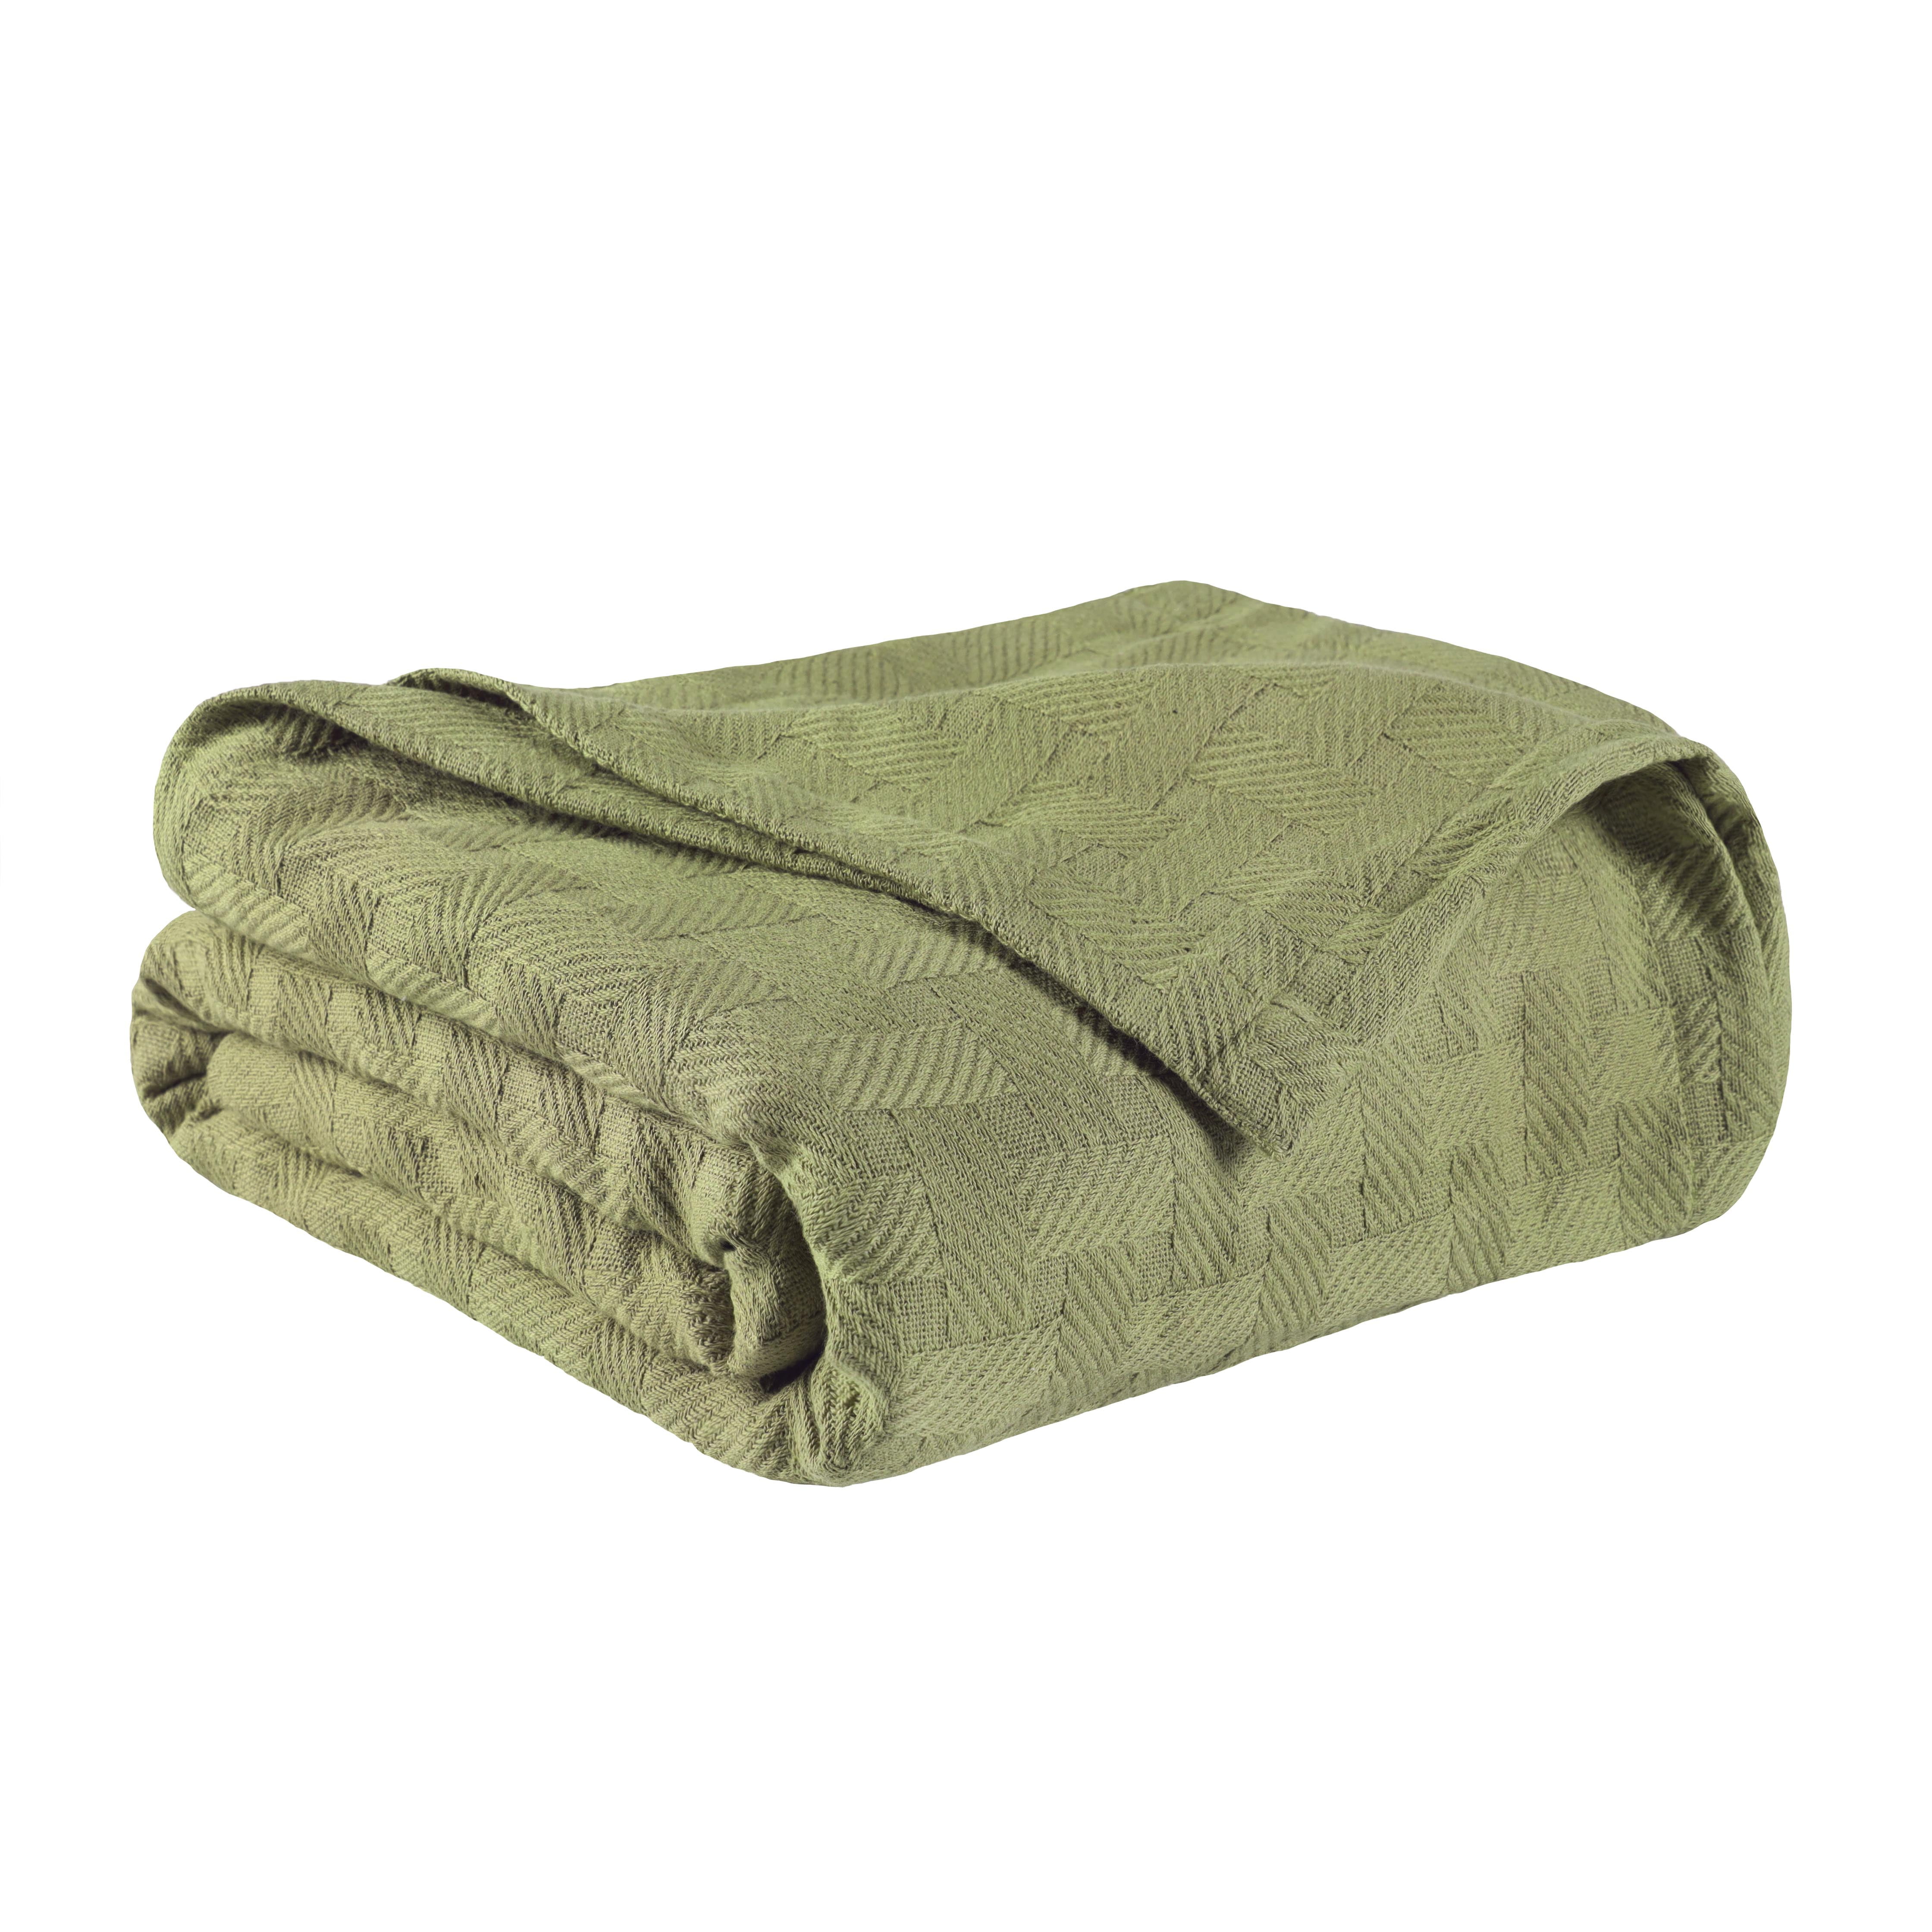 100% Cotton Soft Details about   All-Season Basket Weave Throw Blanket Medium Warmth Blankets 